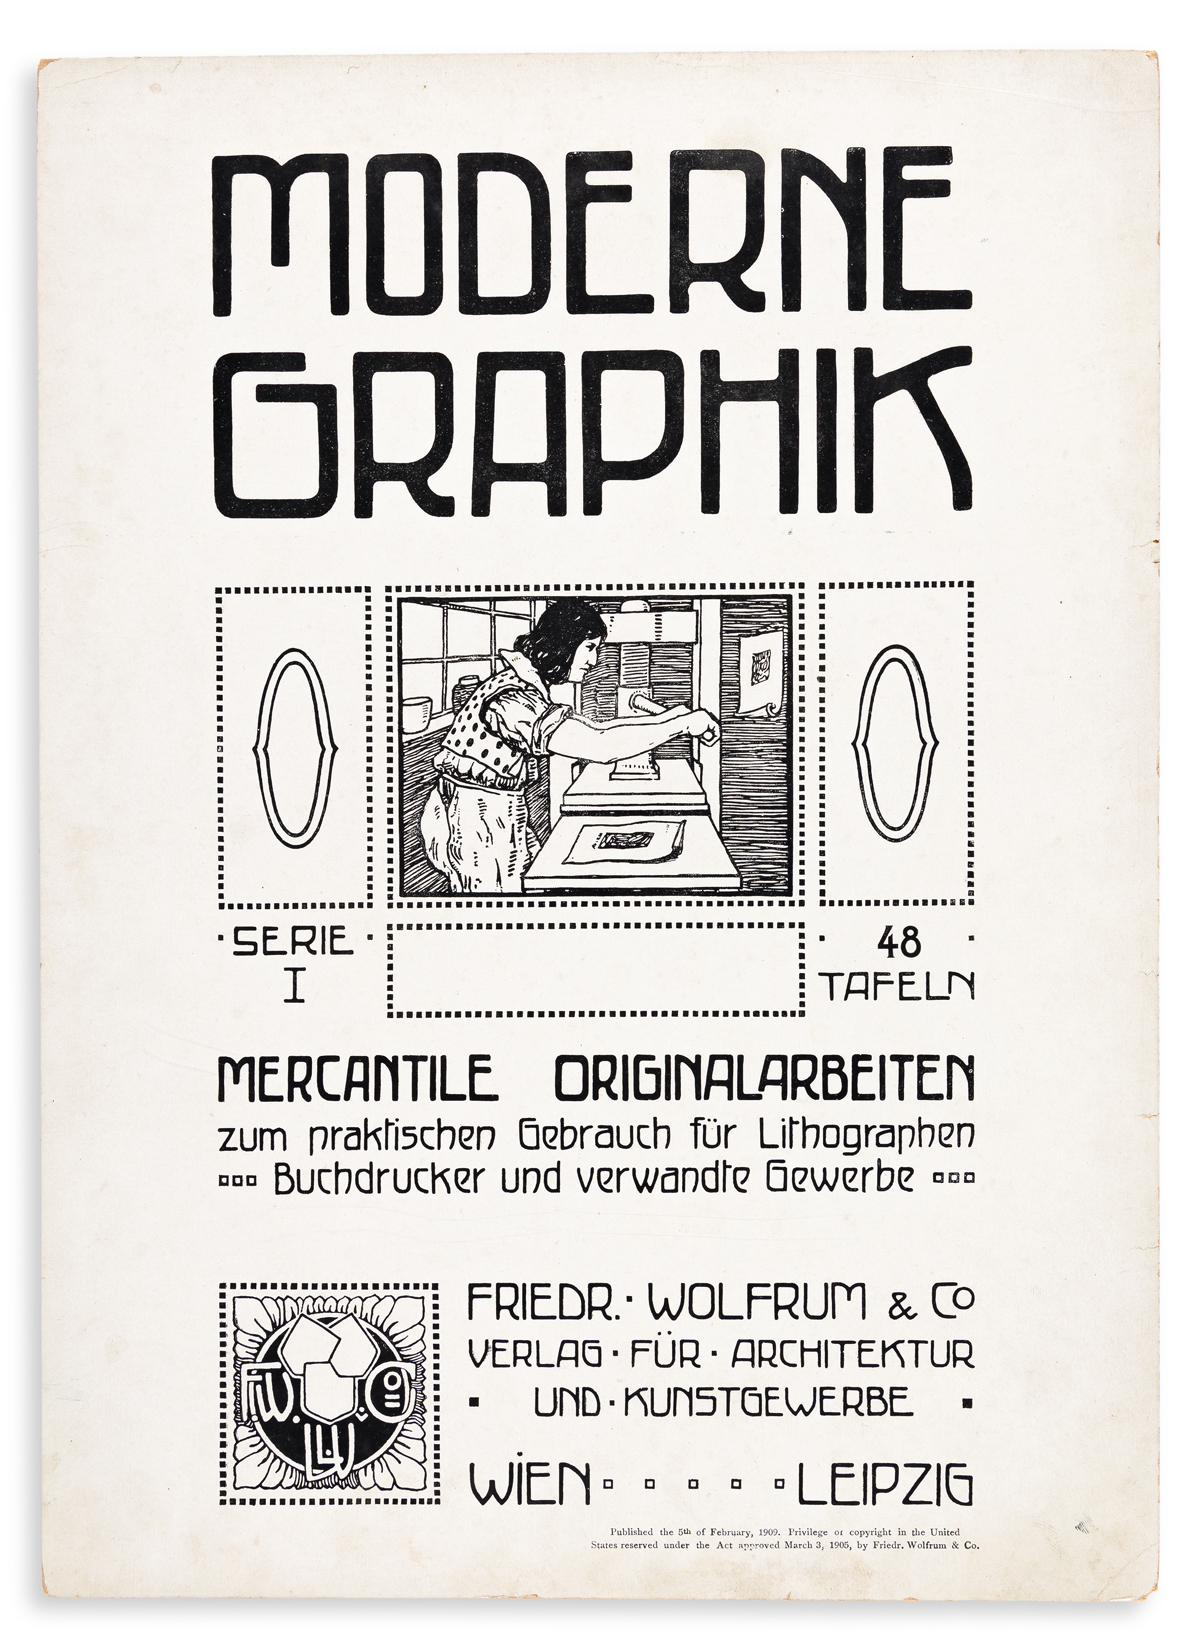 [SPECIMEN BOOK — FRIEDR. WOLFRUM & CO.]. Modern Graphik, Serie I… Mercantile Originalarbeiten zum praktischen Gebrauch fur Lithographen